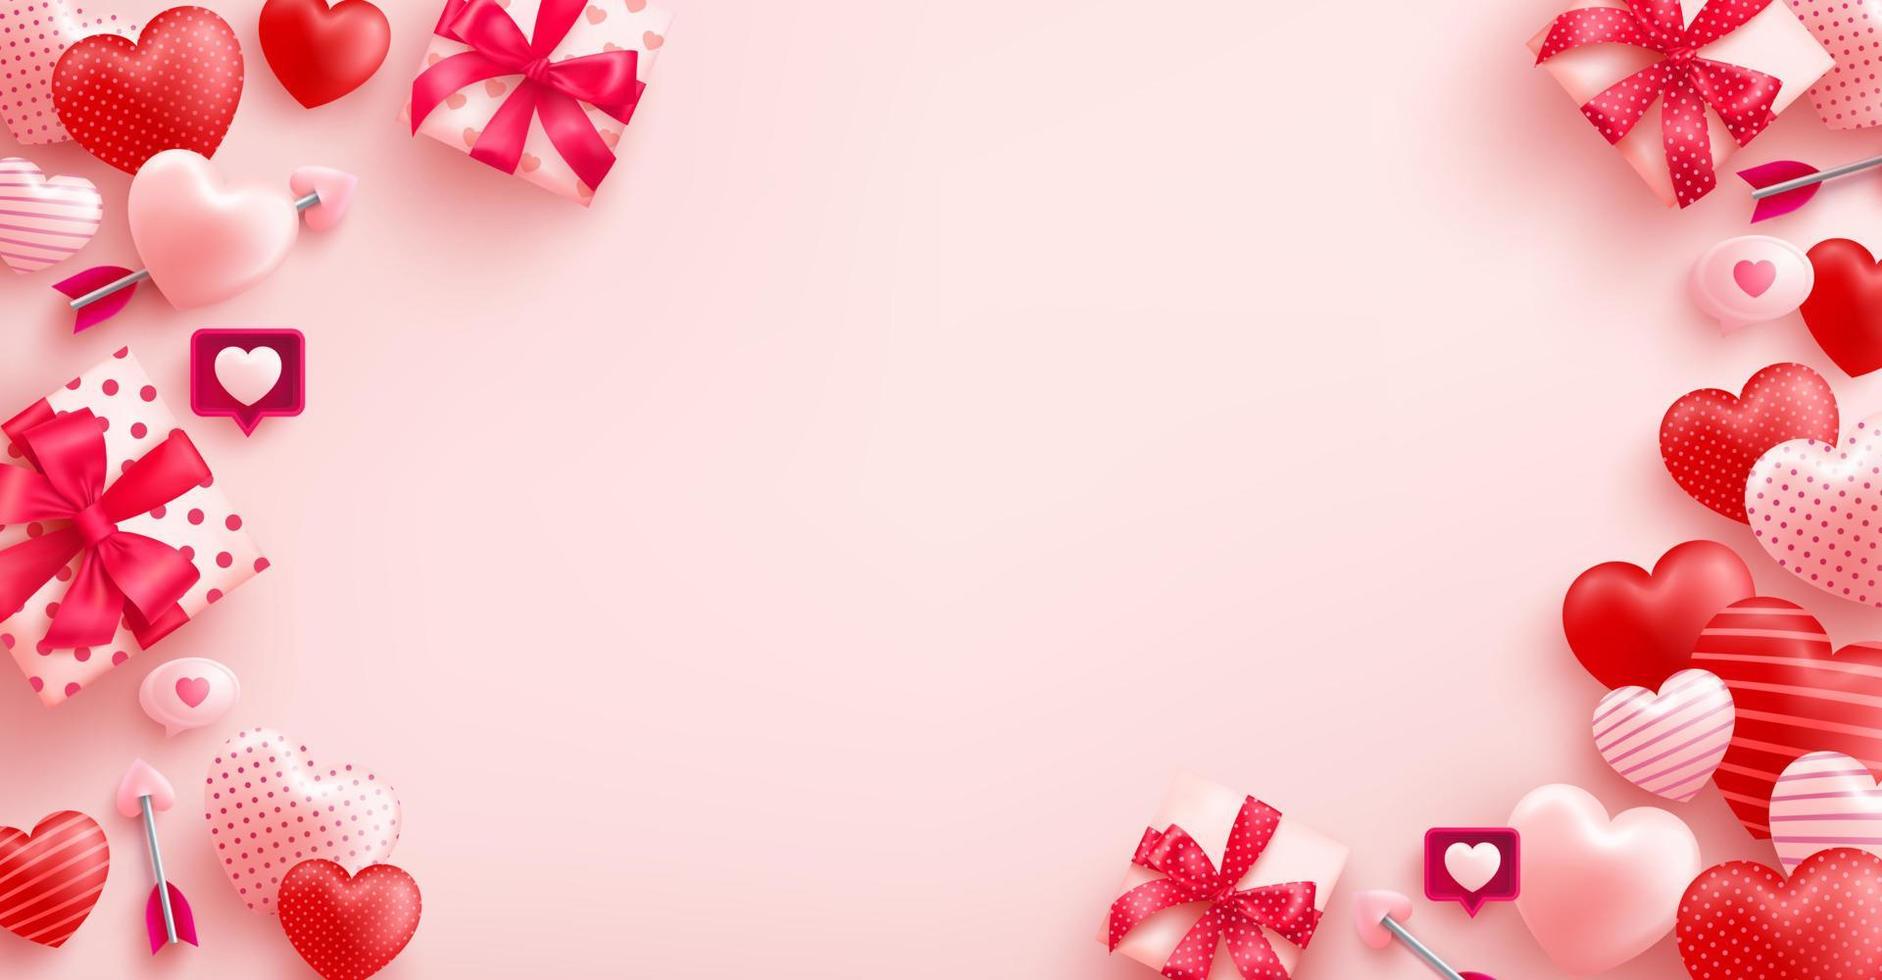 cartel de venta del día de san valentín con corazón lindo y caja de regalo del día de san valentín sobre fondo rosa. plantilla de promoción y compras para el concepto de amor y día de san valentín. vector